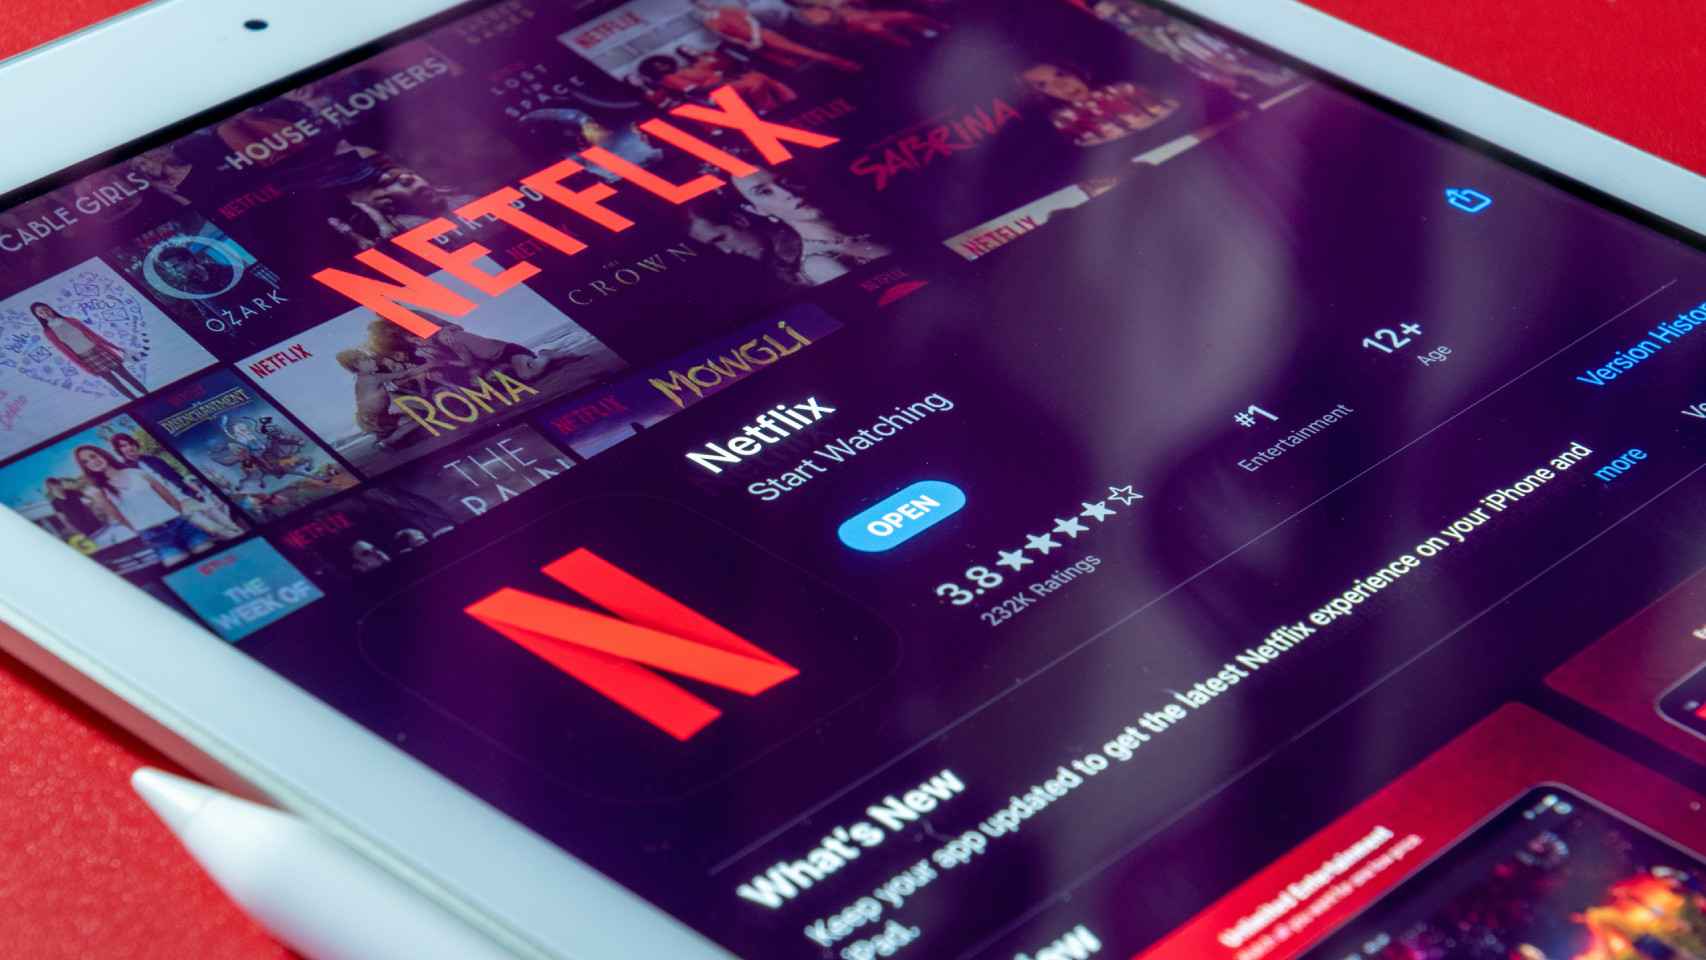 La app de Netflix en un teléfono móvil